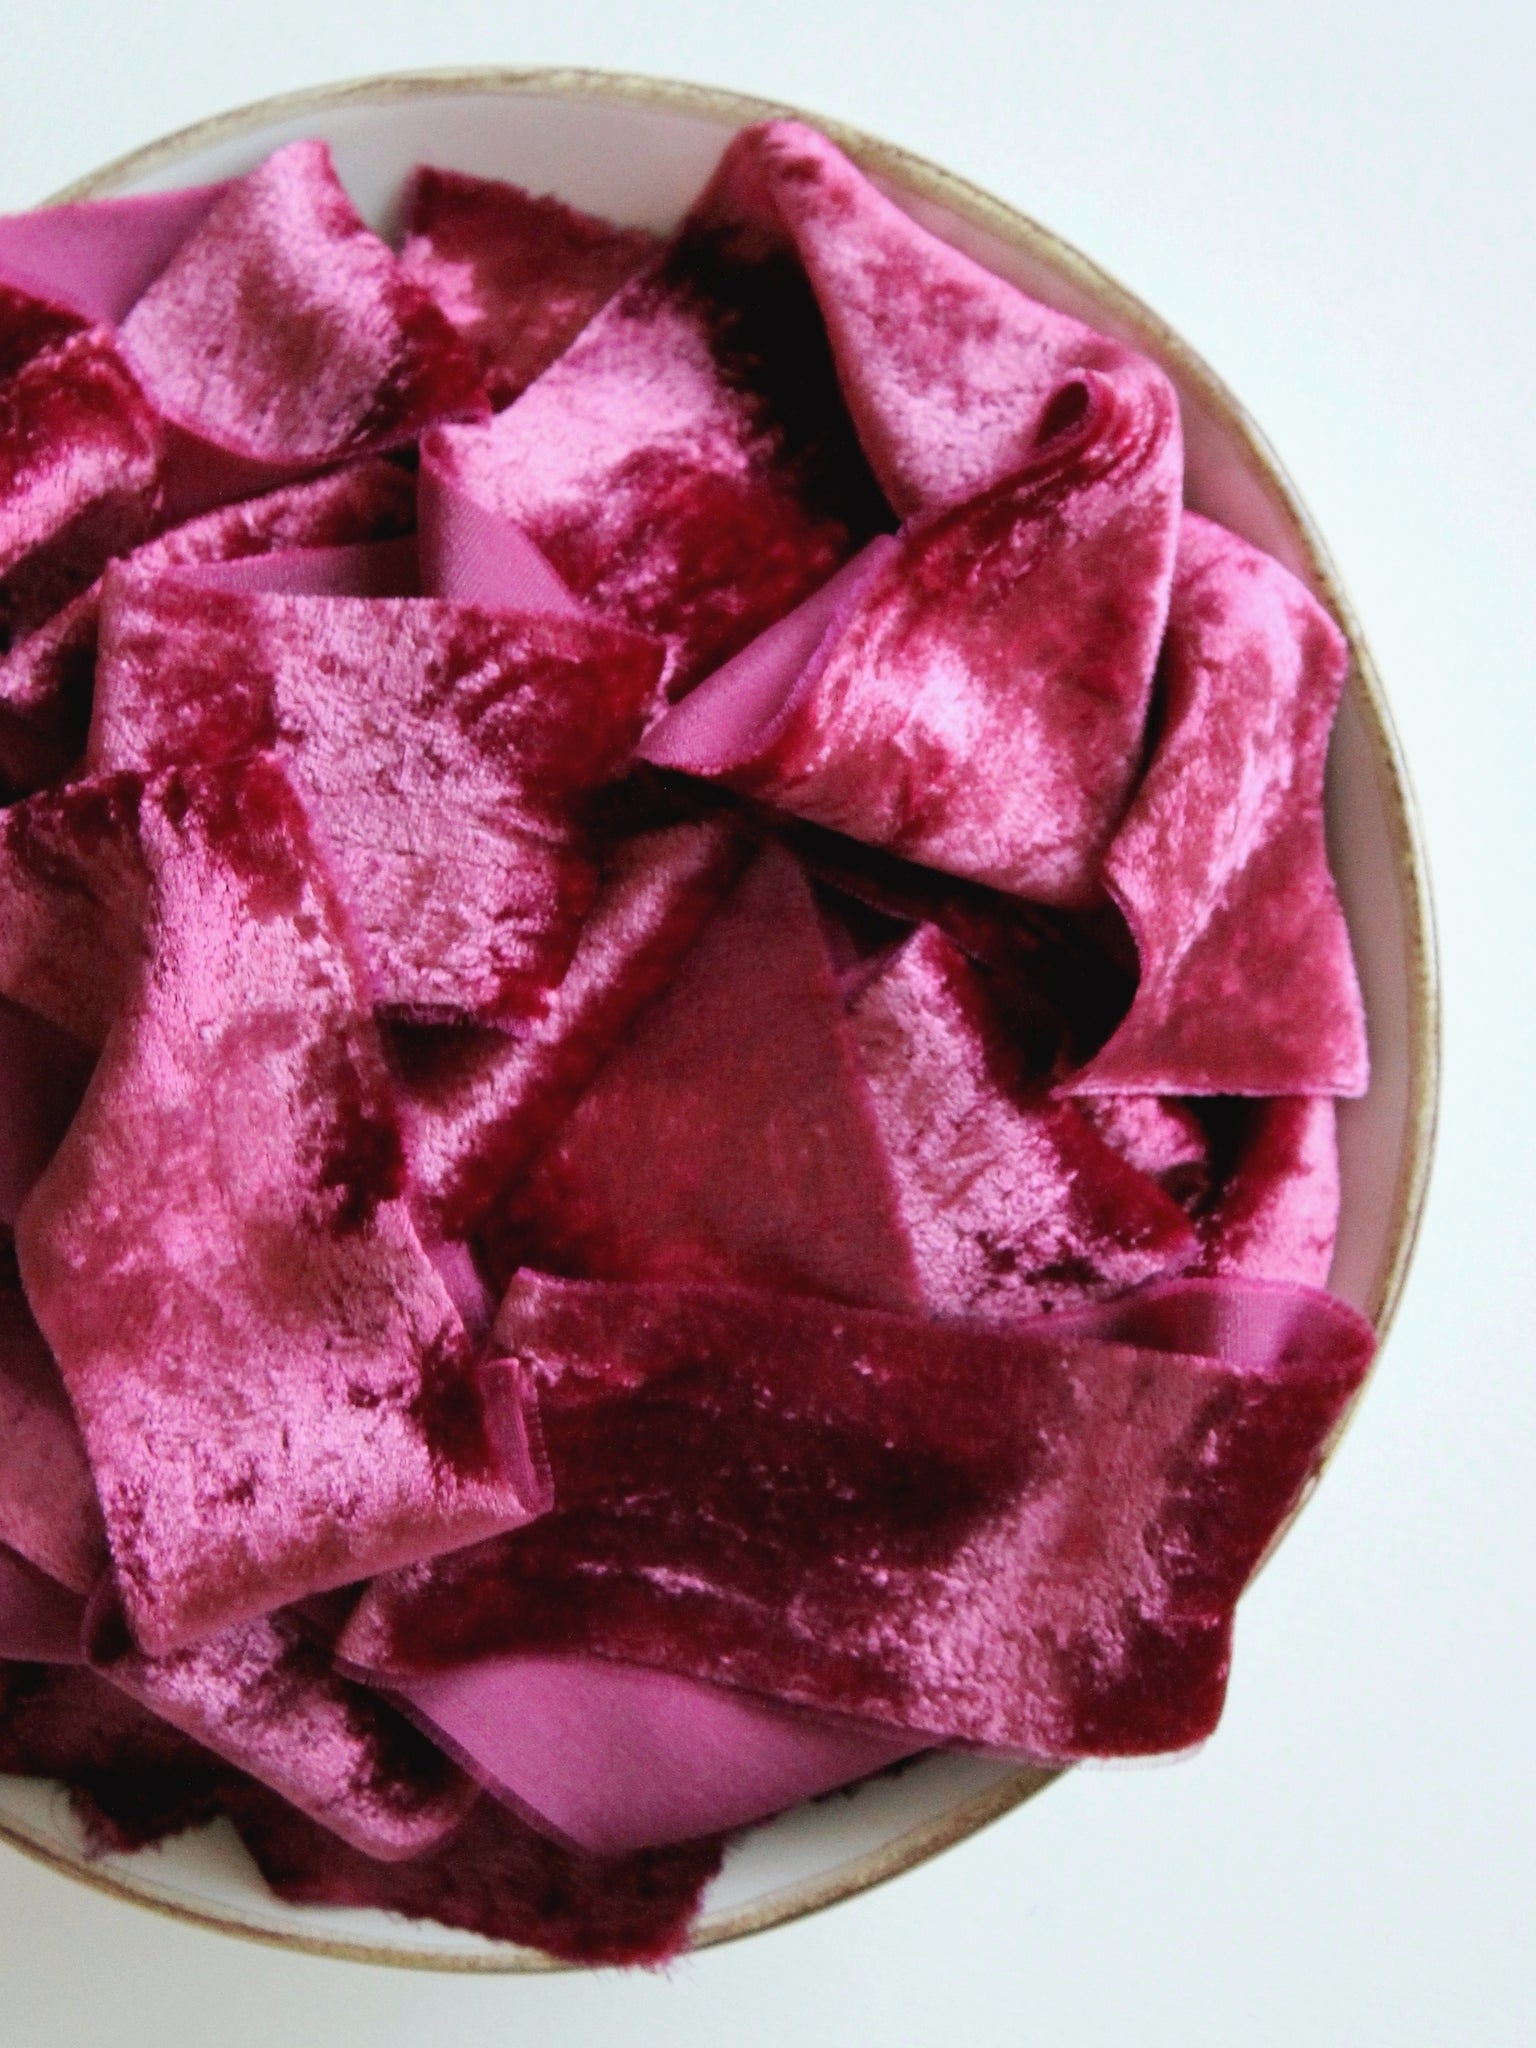 Raspberry sorbet silk velvet ribbon – Wisteria and Vine